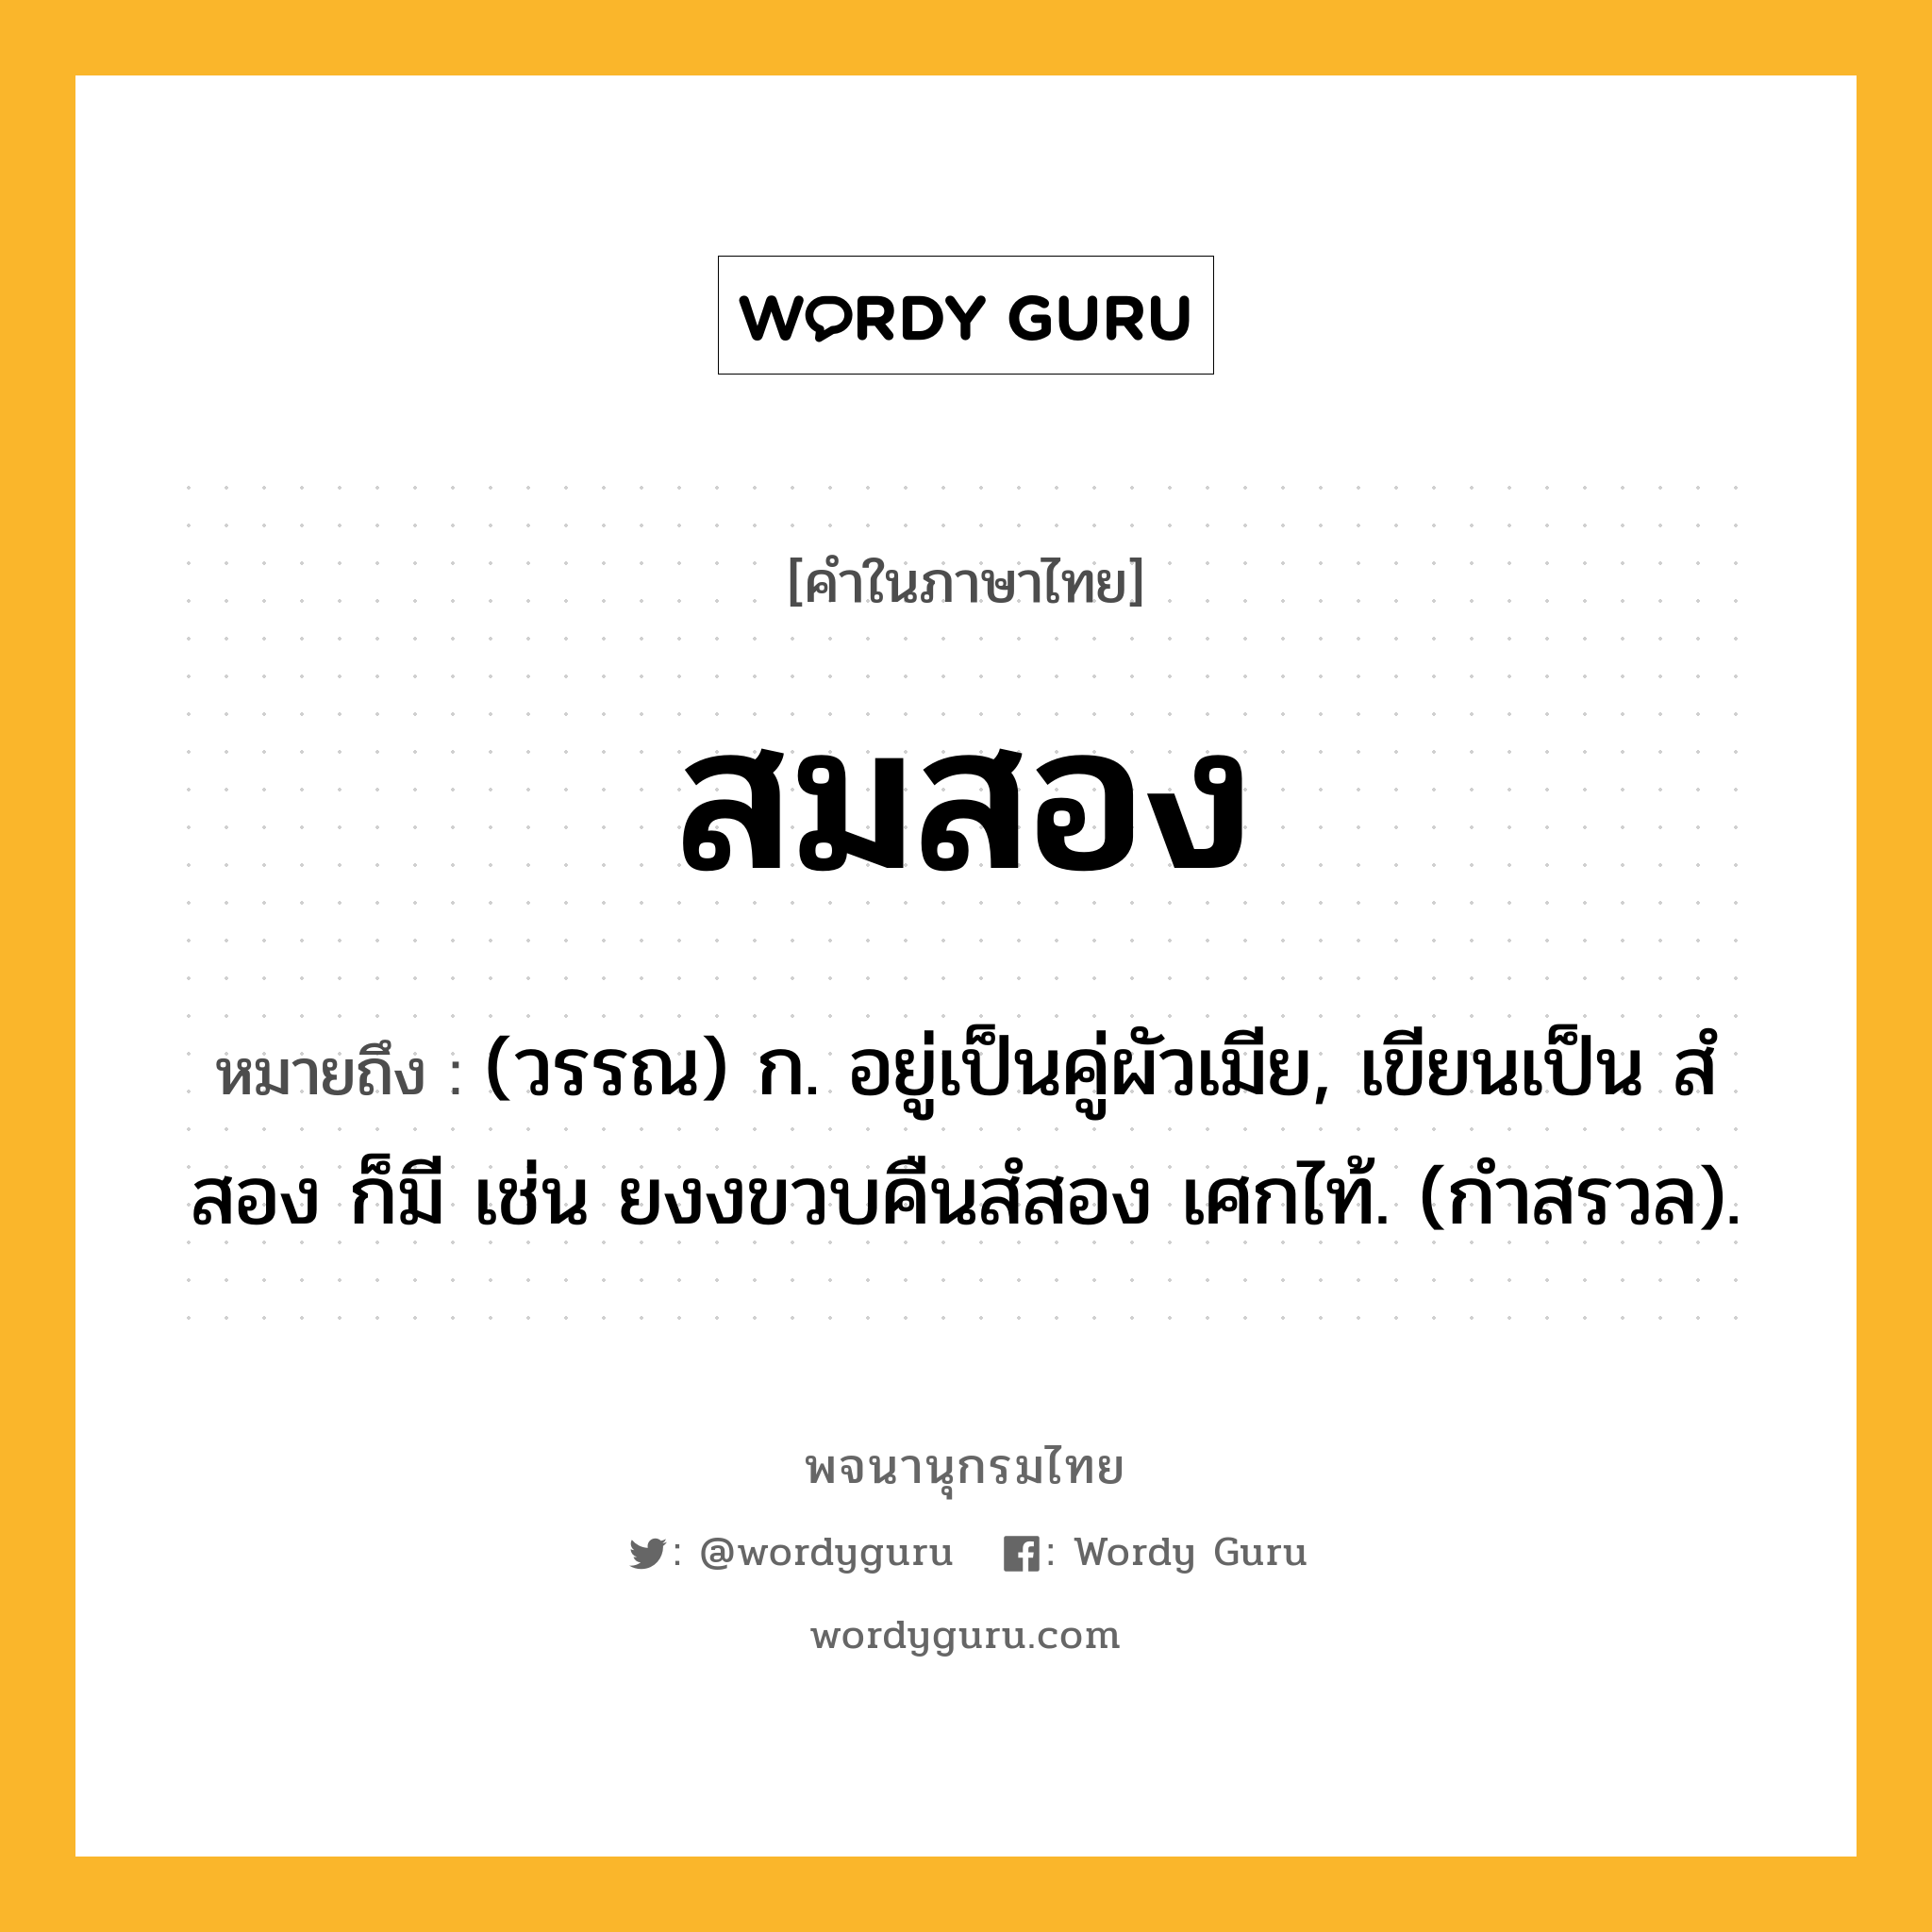 สมสอง หมายถึงอะไร?, คำในภาษาไทย สมสอง หมายถึง (วรรณ) ก. อยู่เป็นคู่ผัวเมีย, เขียนเป็น สํสอง ก็มี เช่น ยงงขวบคืนสํสอง เศกไท้. (กำสรวล).